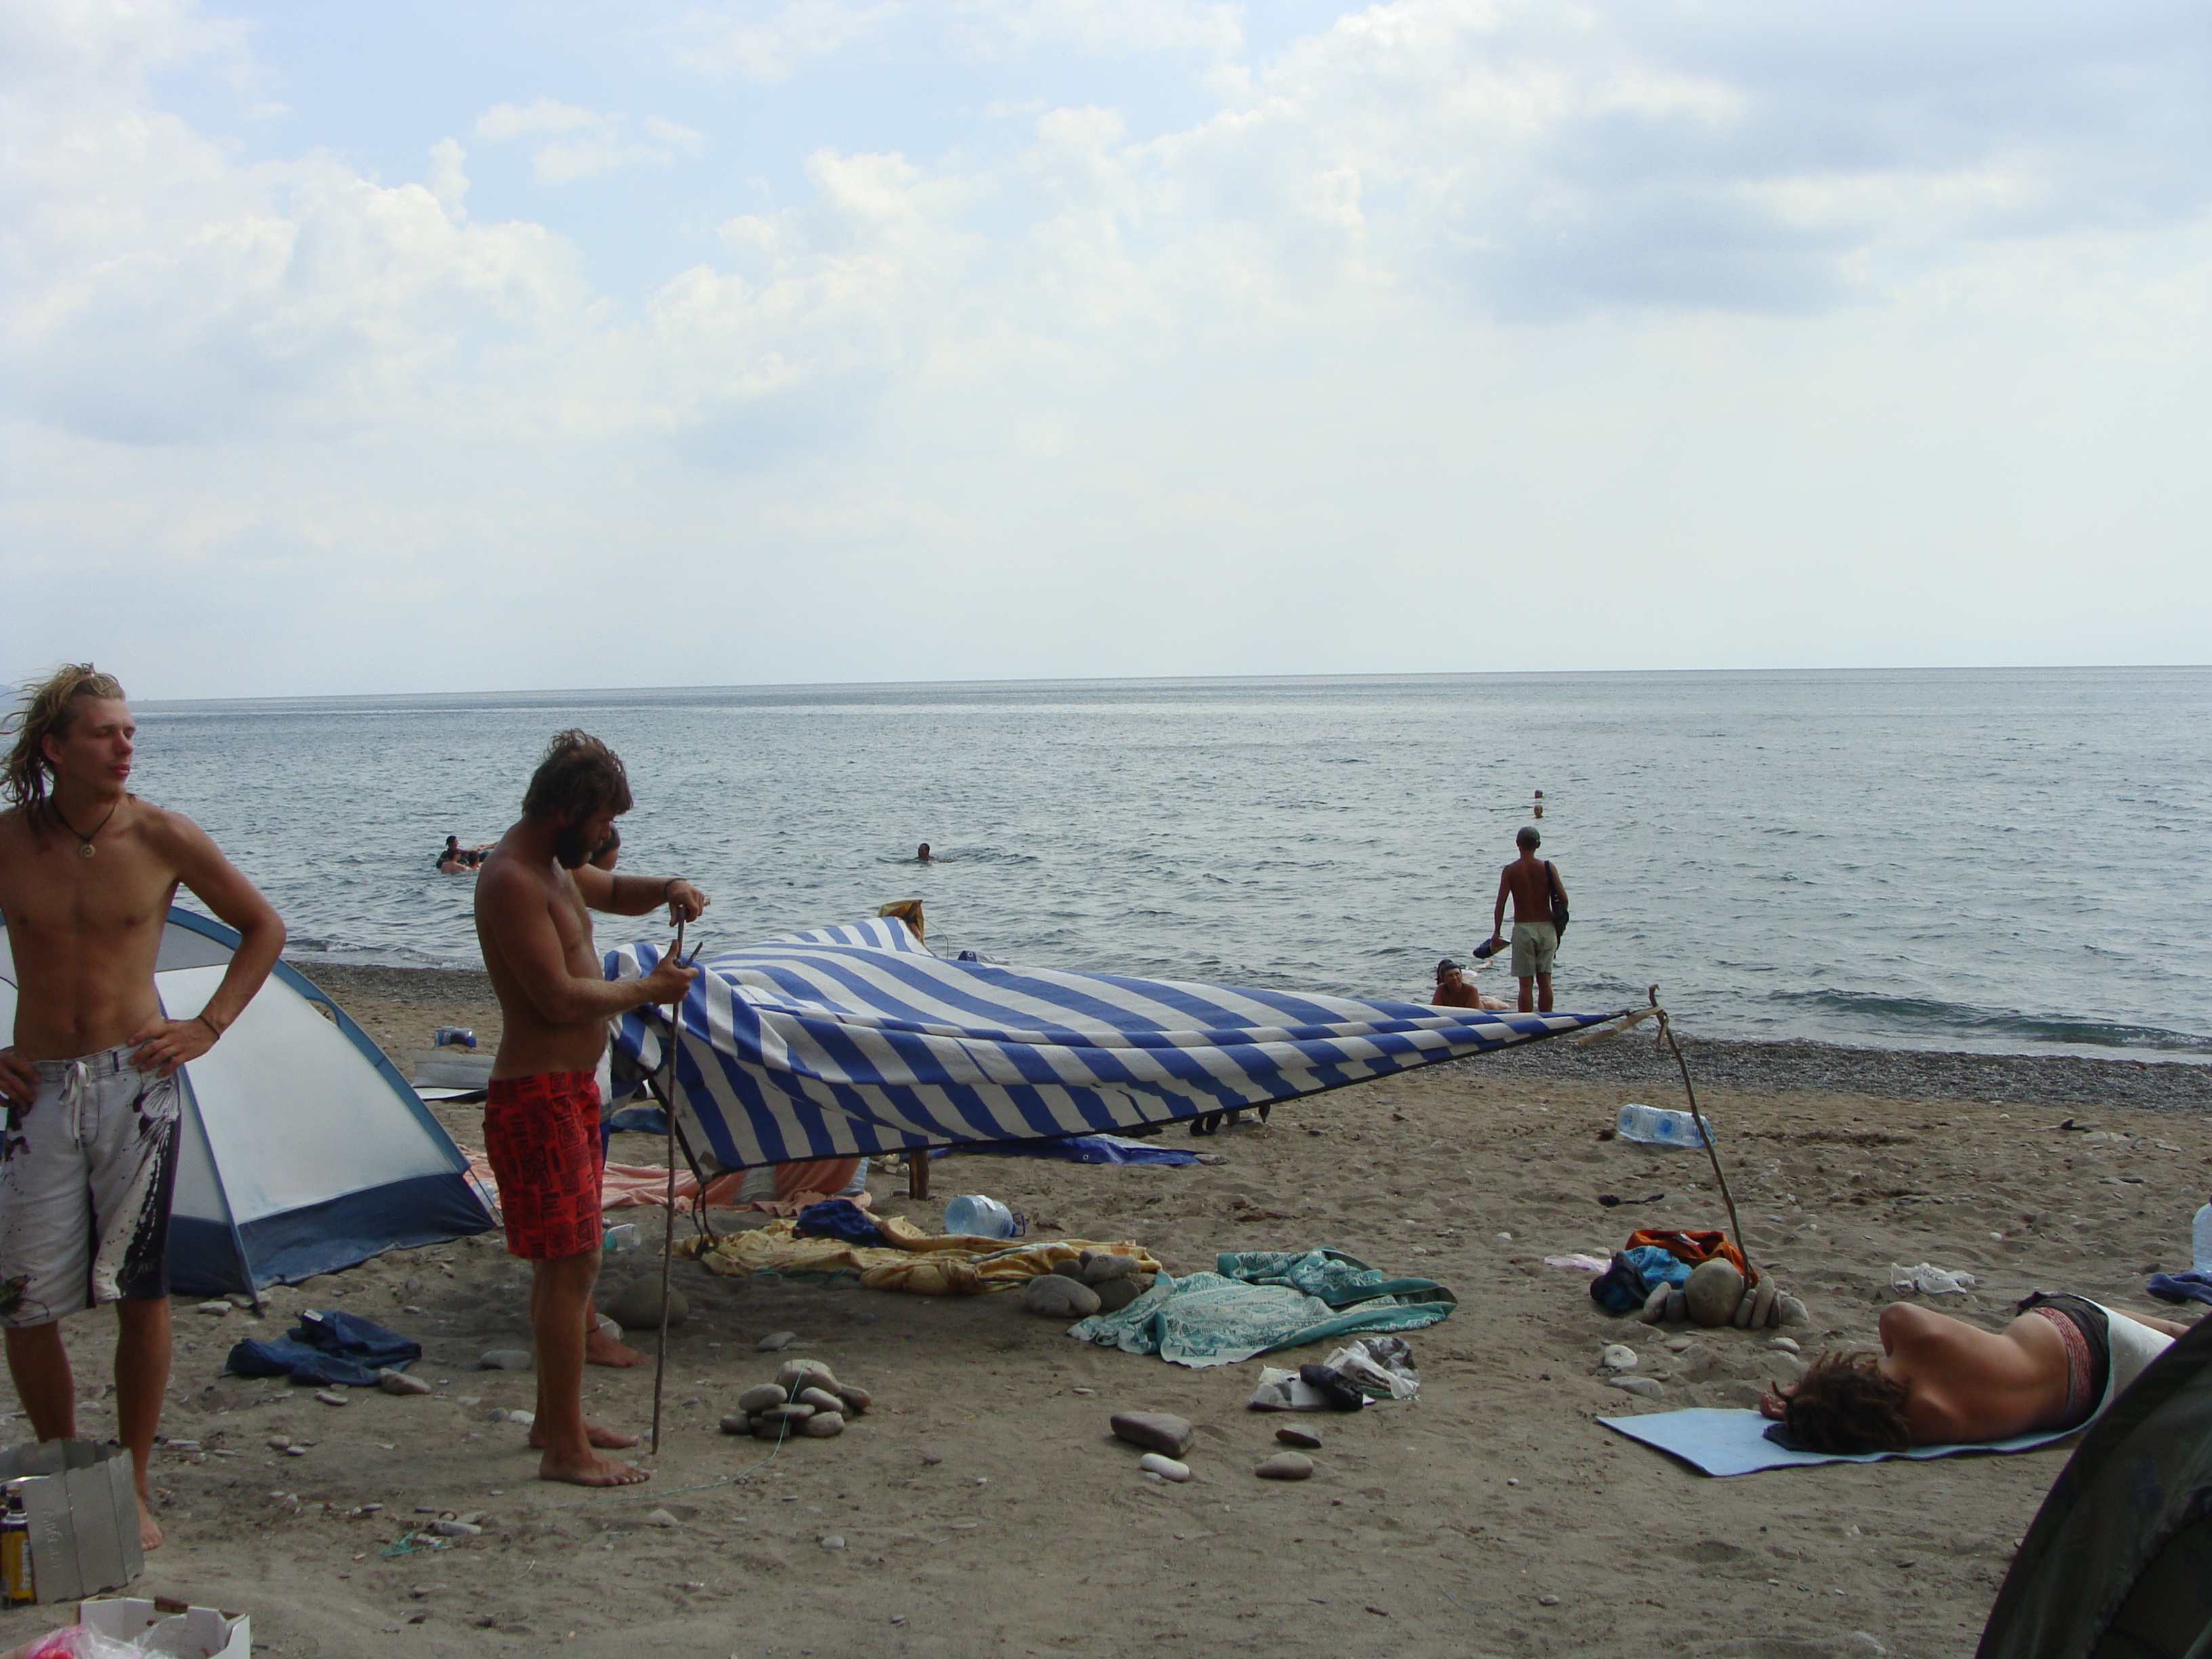 Nude beach russia ukraine